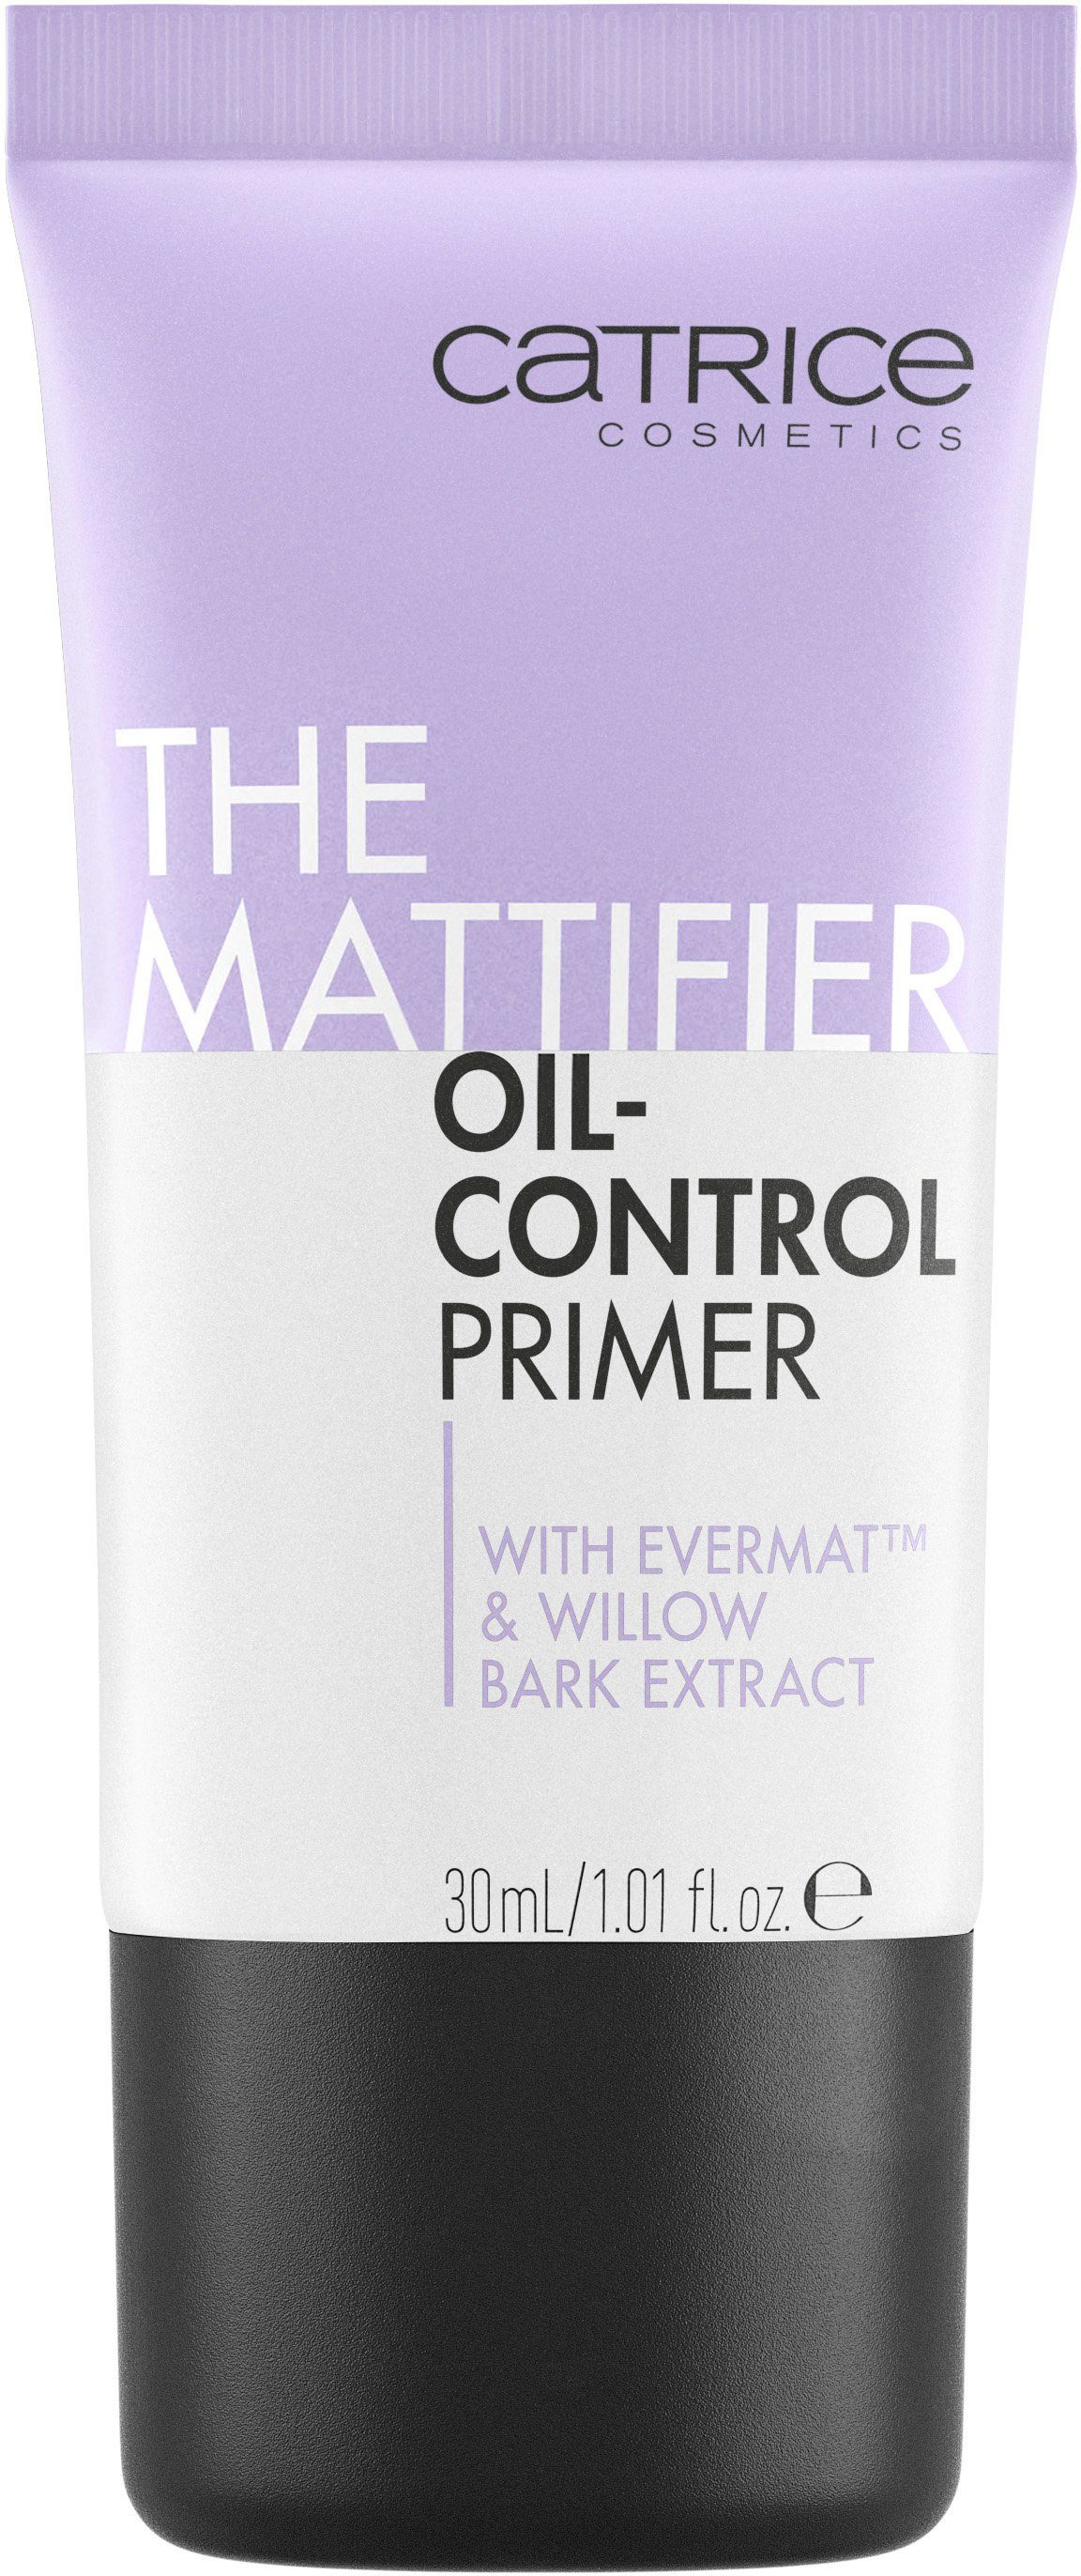 3-tlg. Oil-Control The Primer Mattifier Primer, Catrice